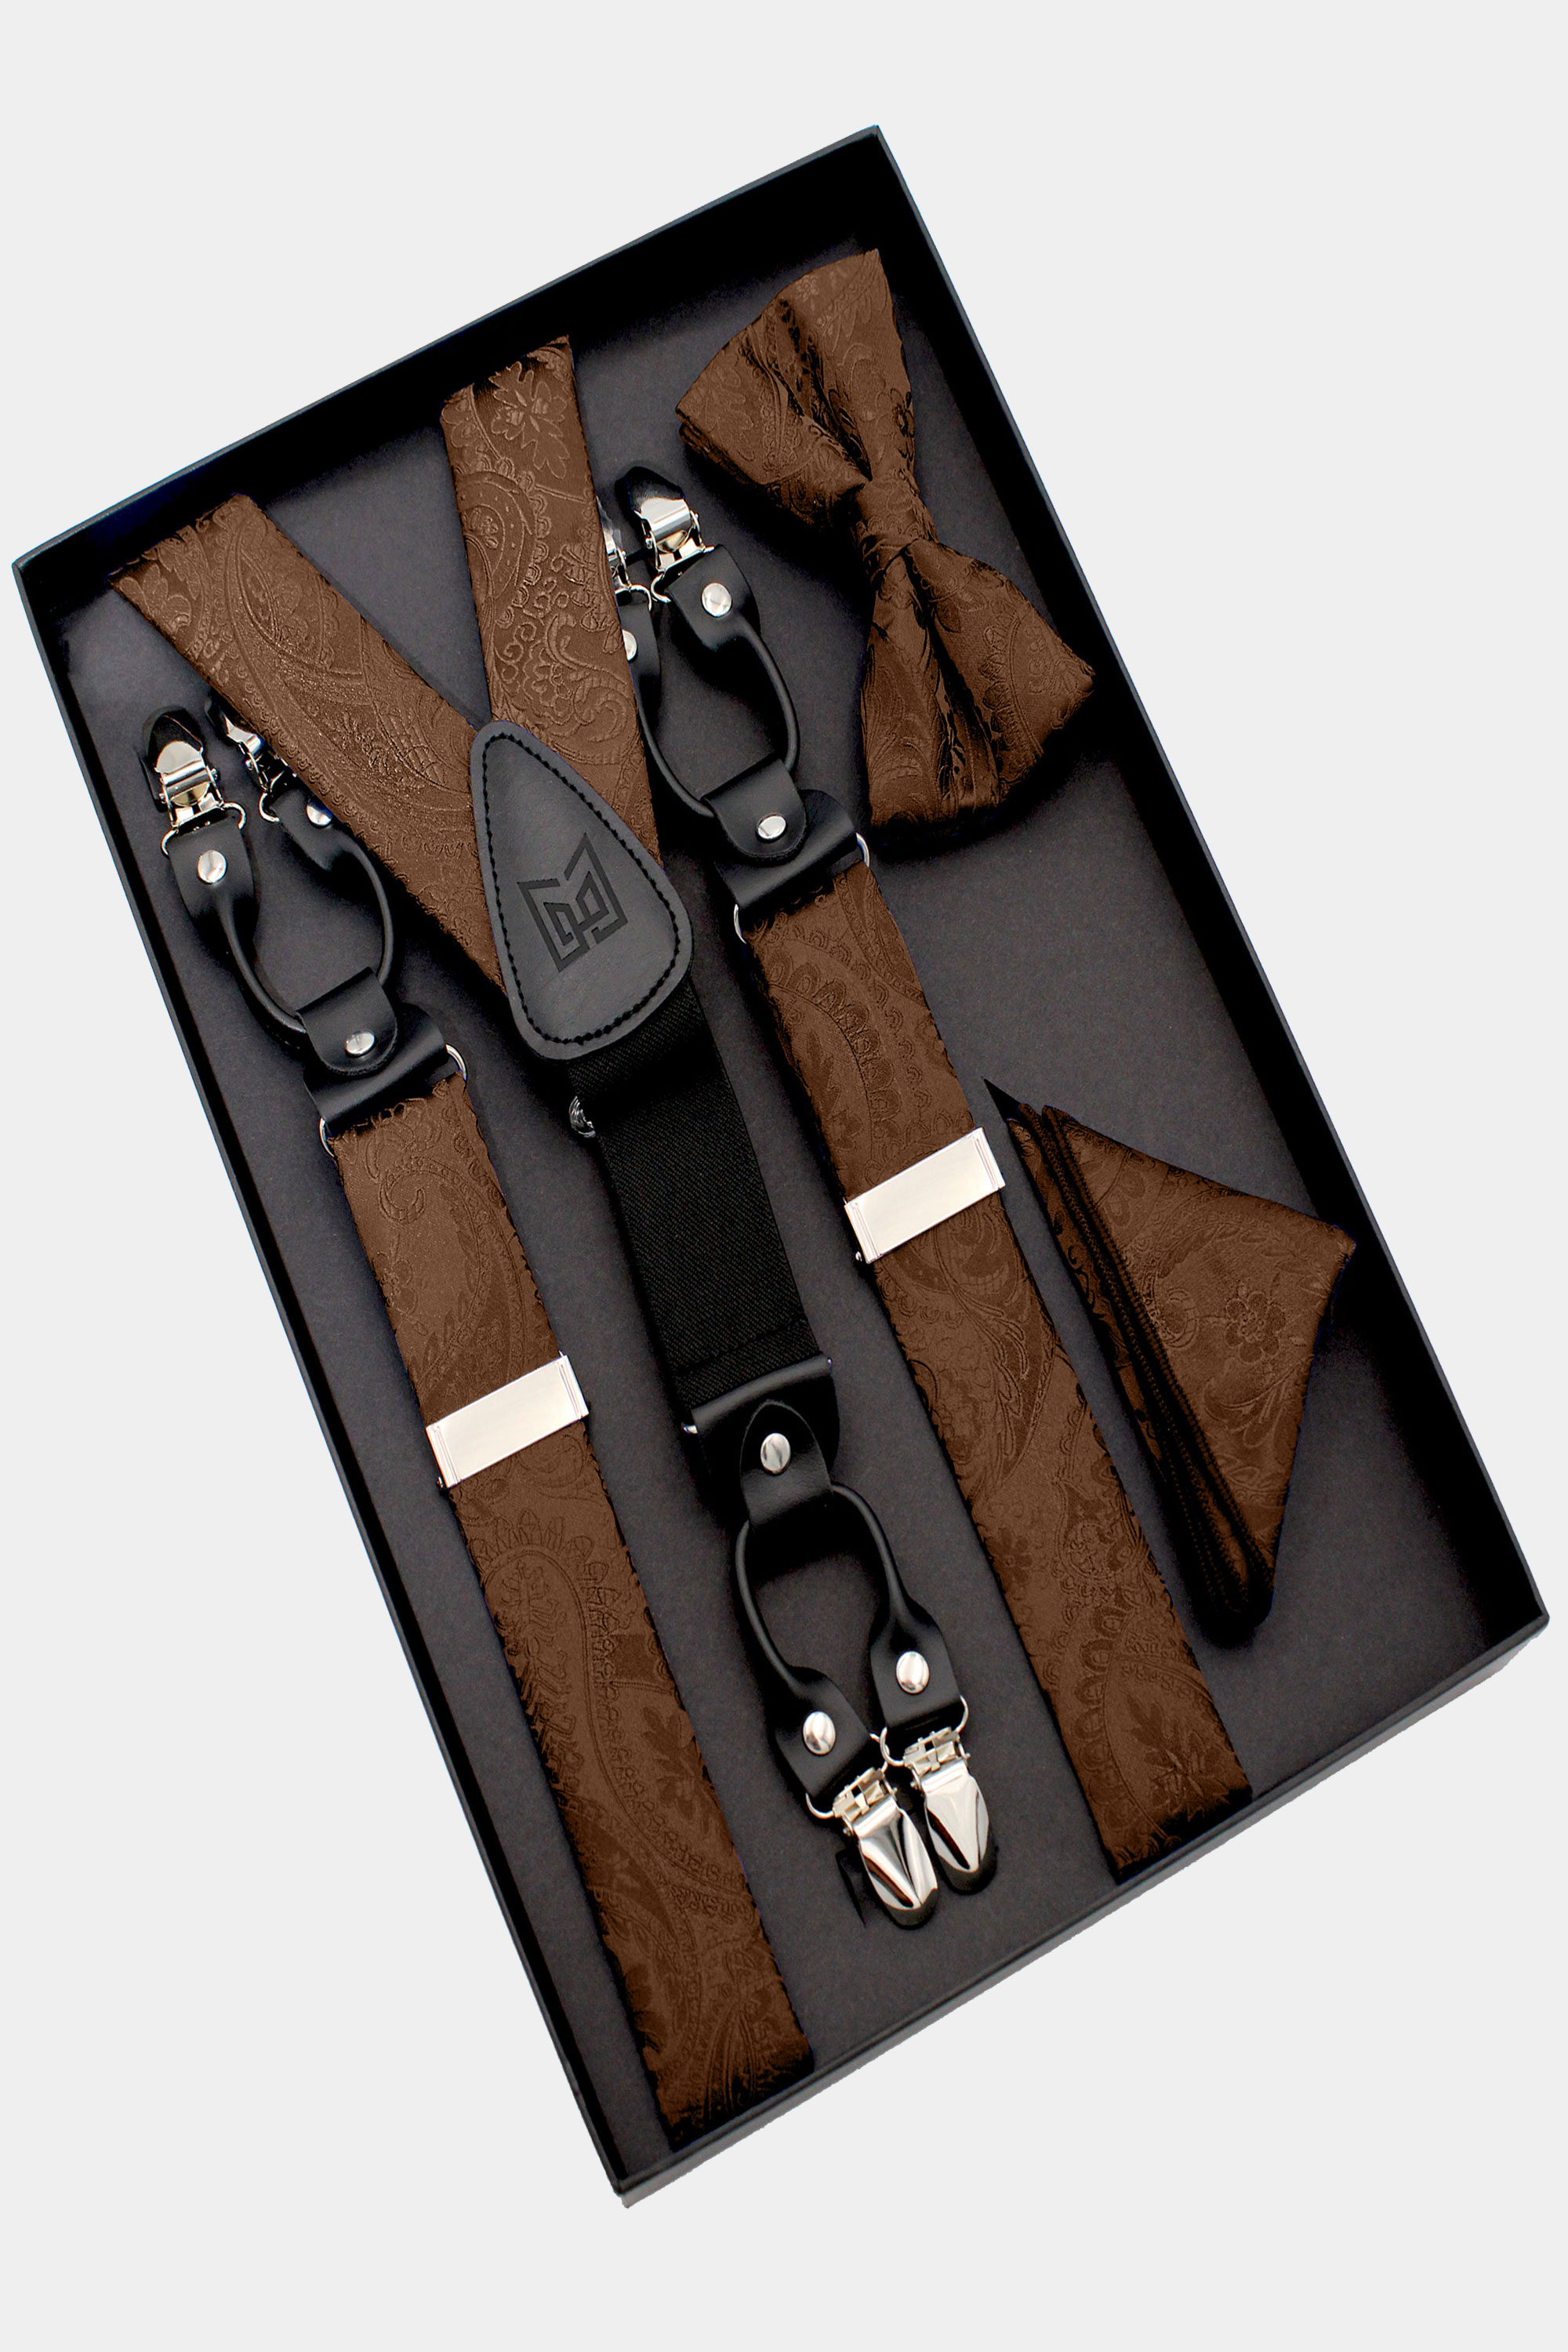 Brown-Bopw-Tie-and-Suspenders-set-Groomsmen-Wedding-Prom-from-Gentlemansguru.com